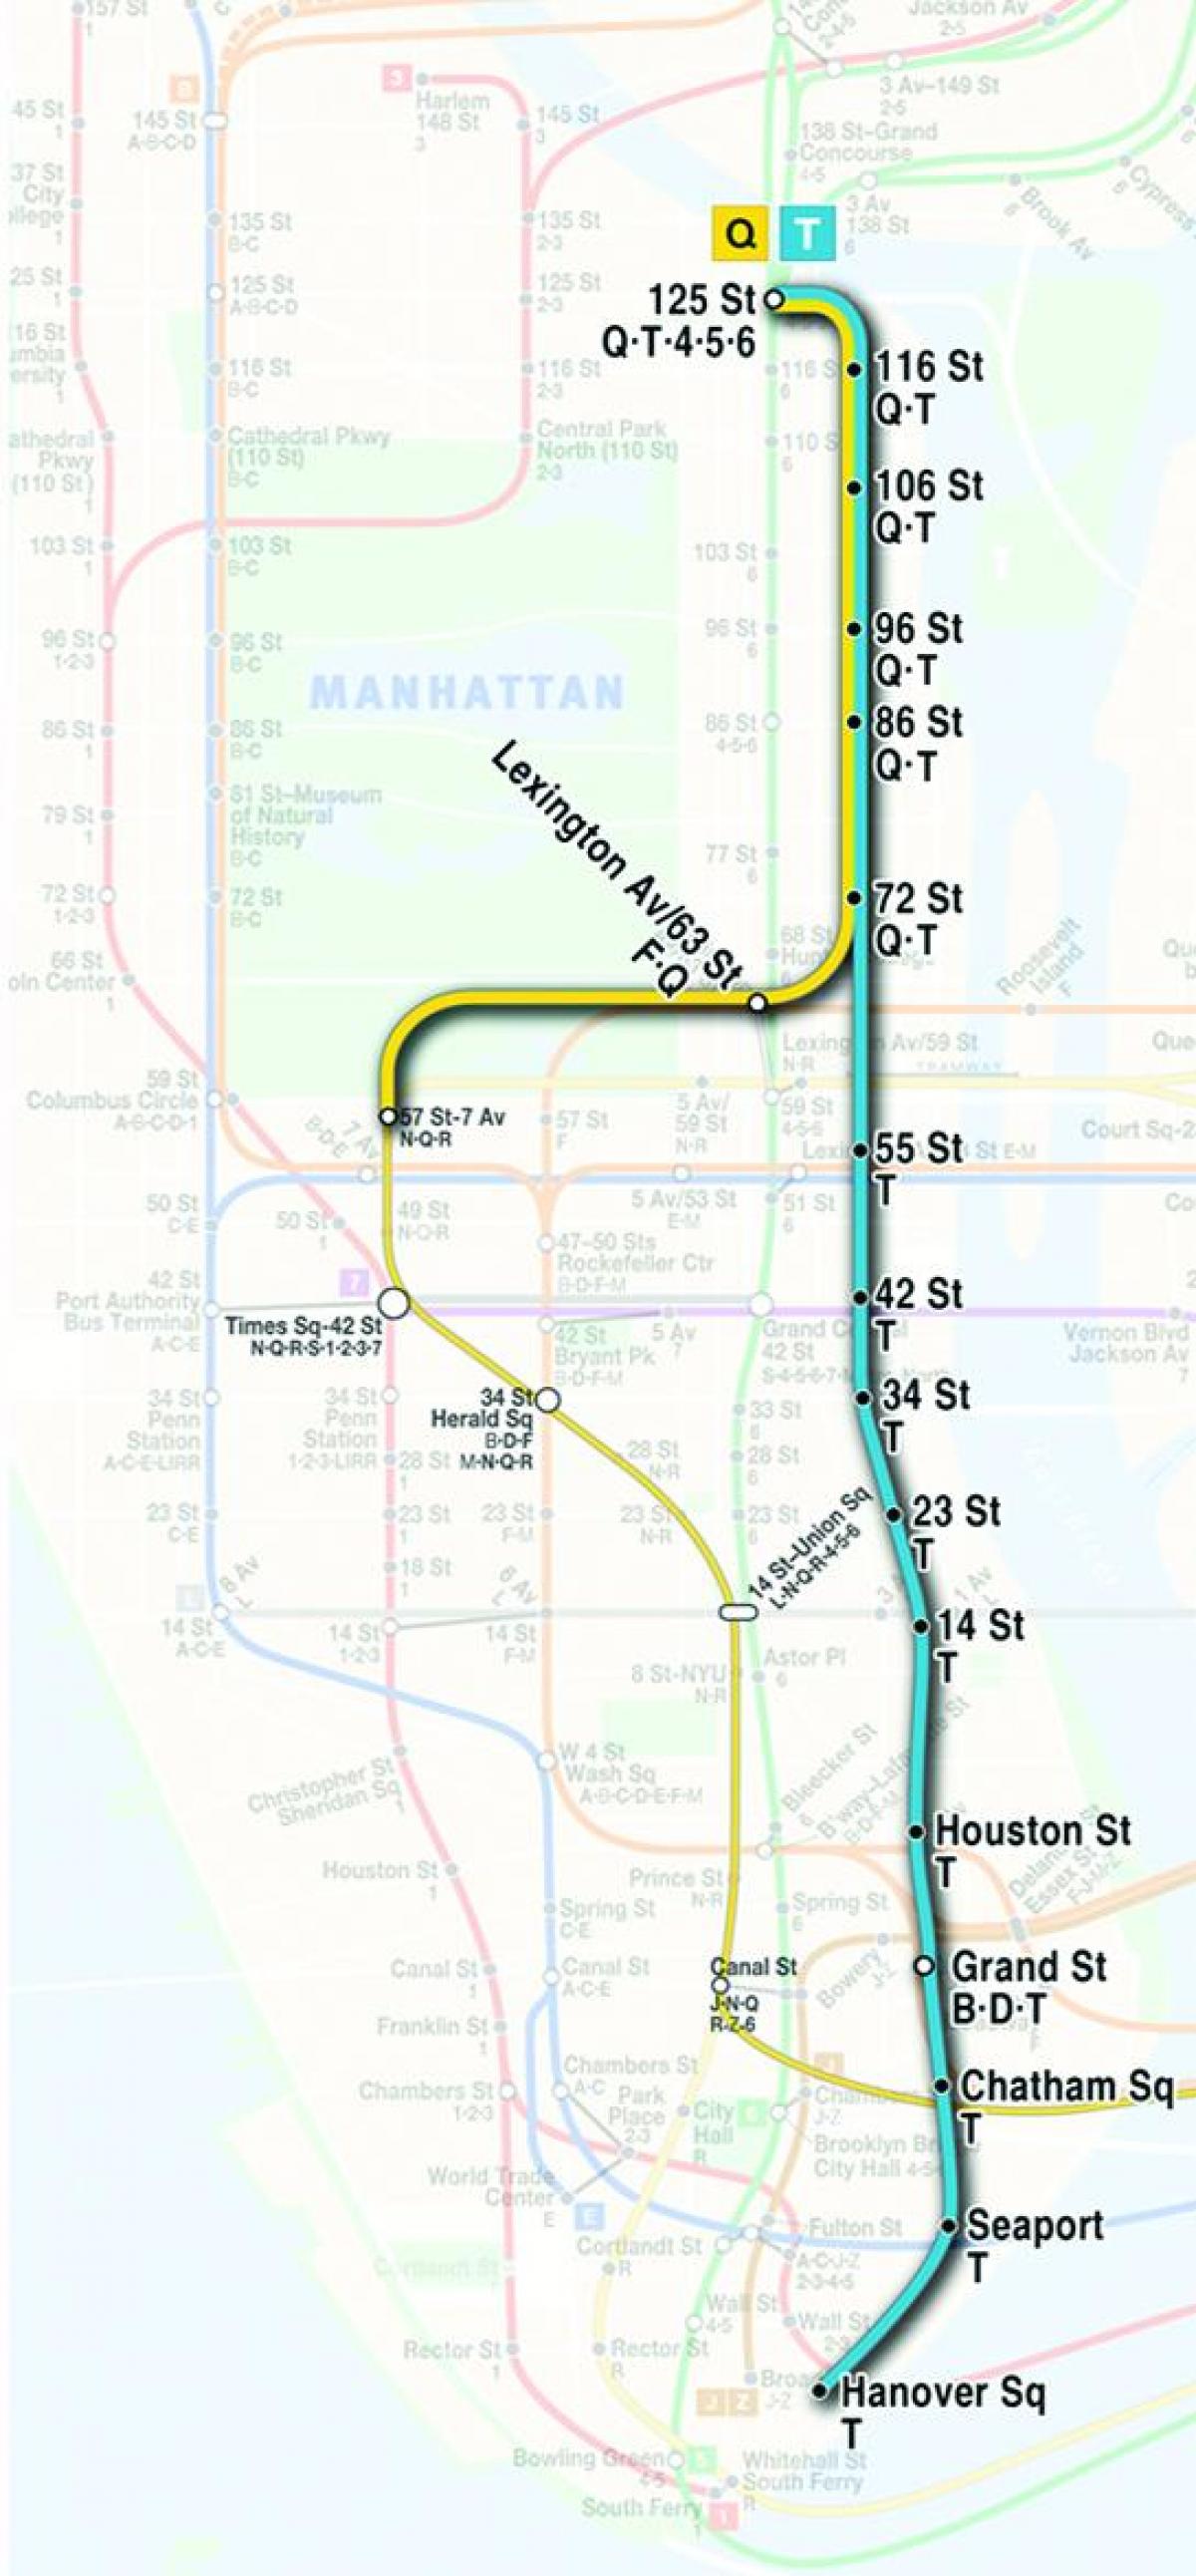 แผนที่ของที่สองถนนรถไฟใต้ดิน